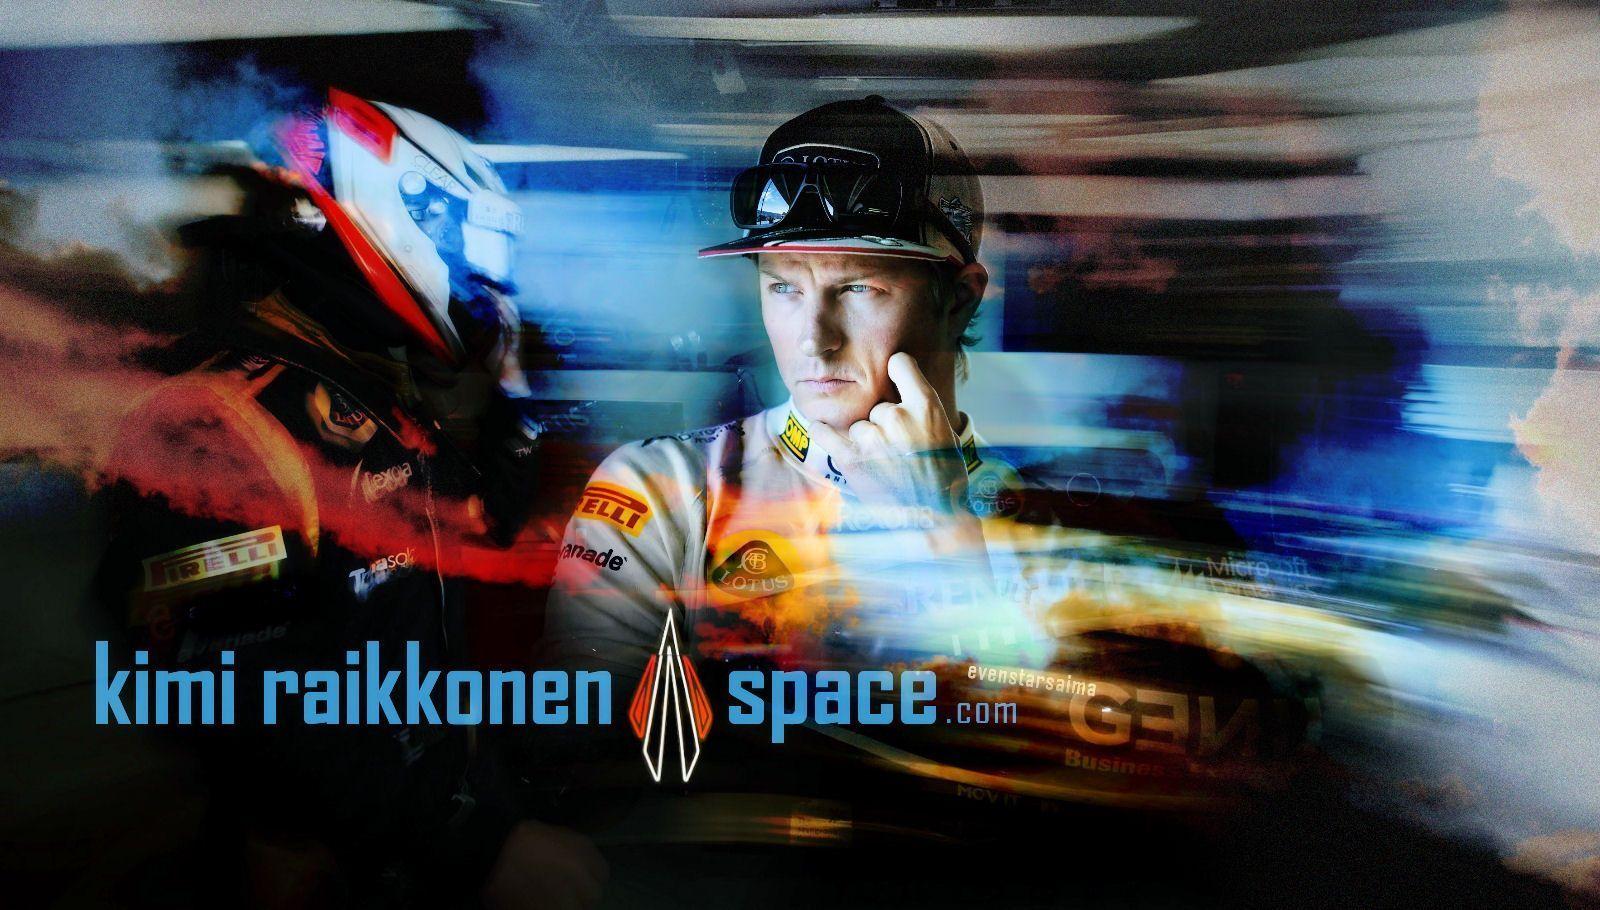 Wallpaper. Kimi Räikkönen Space